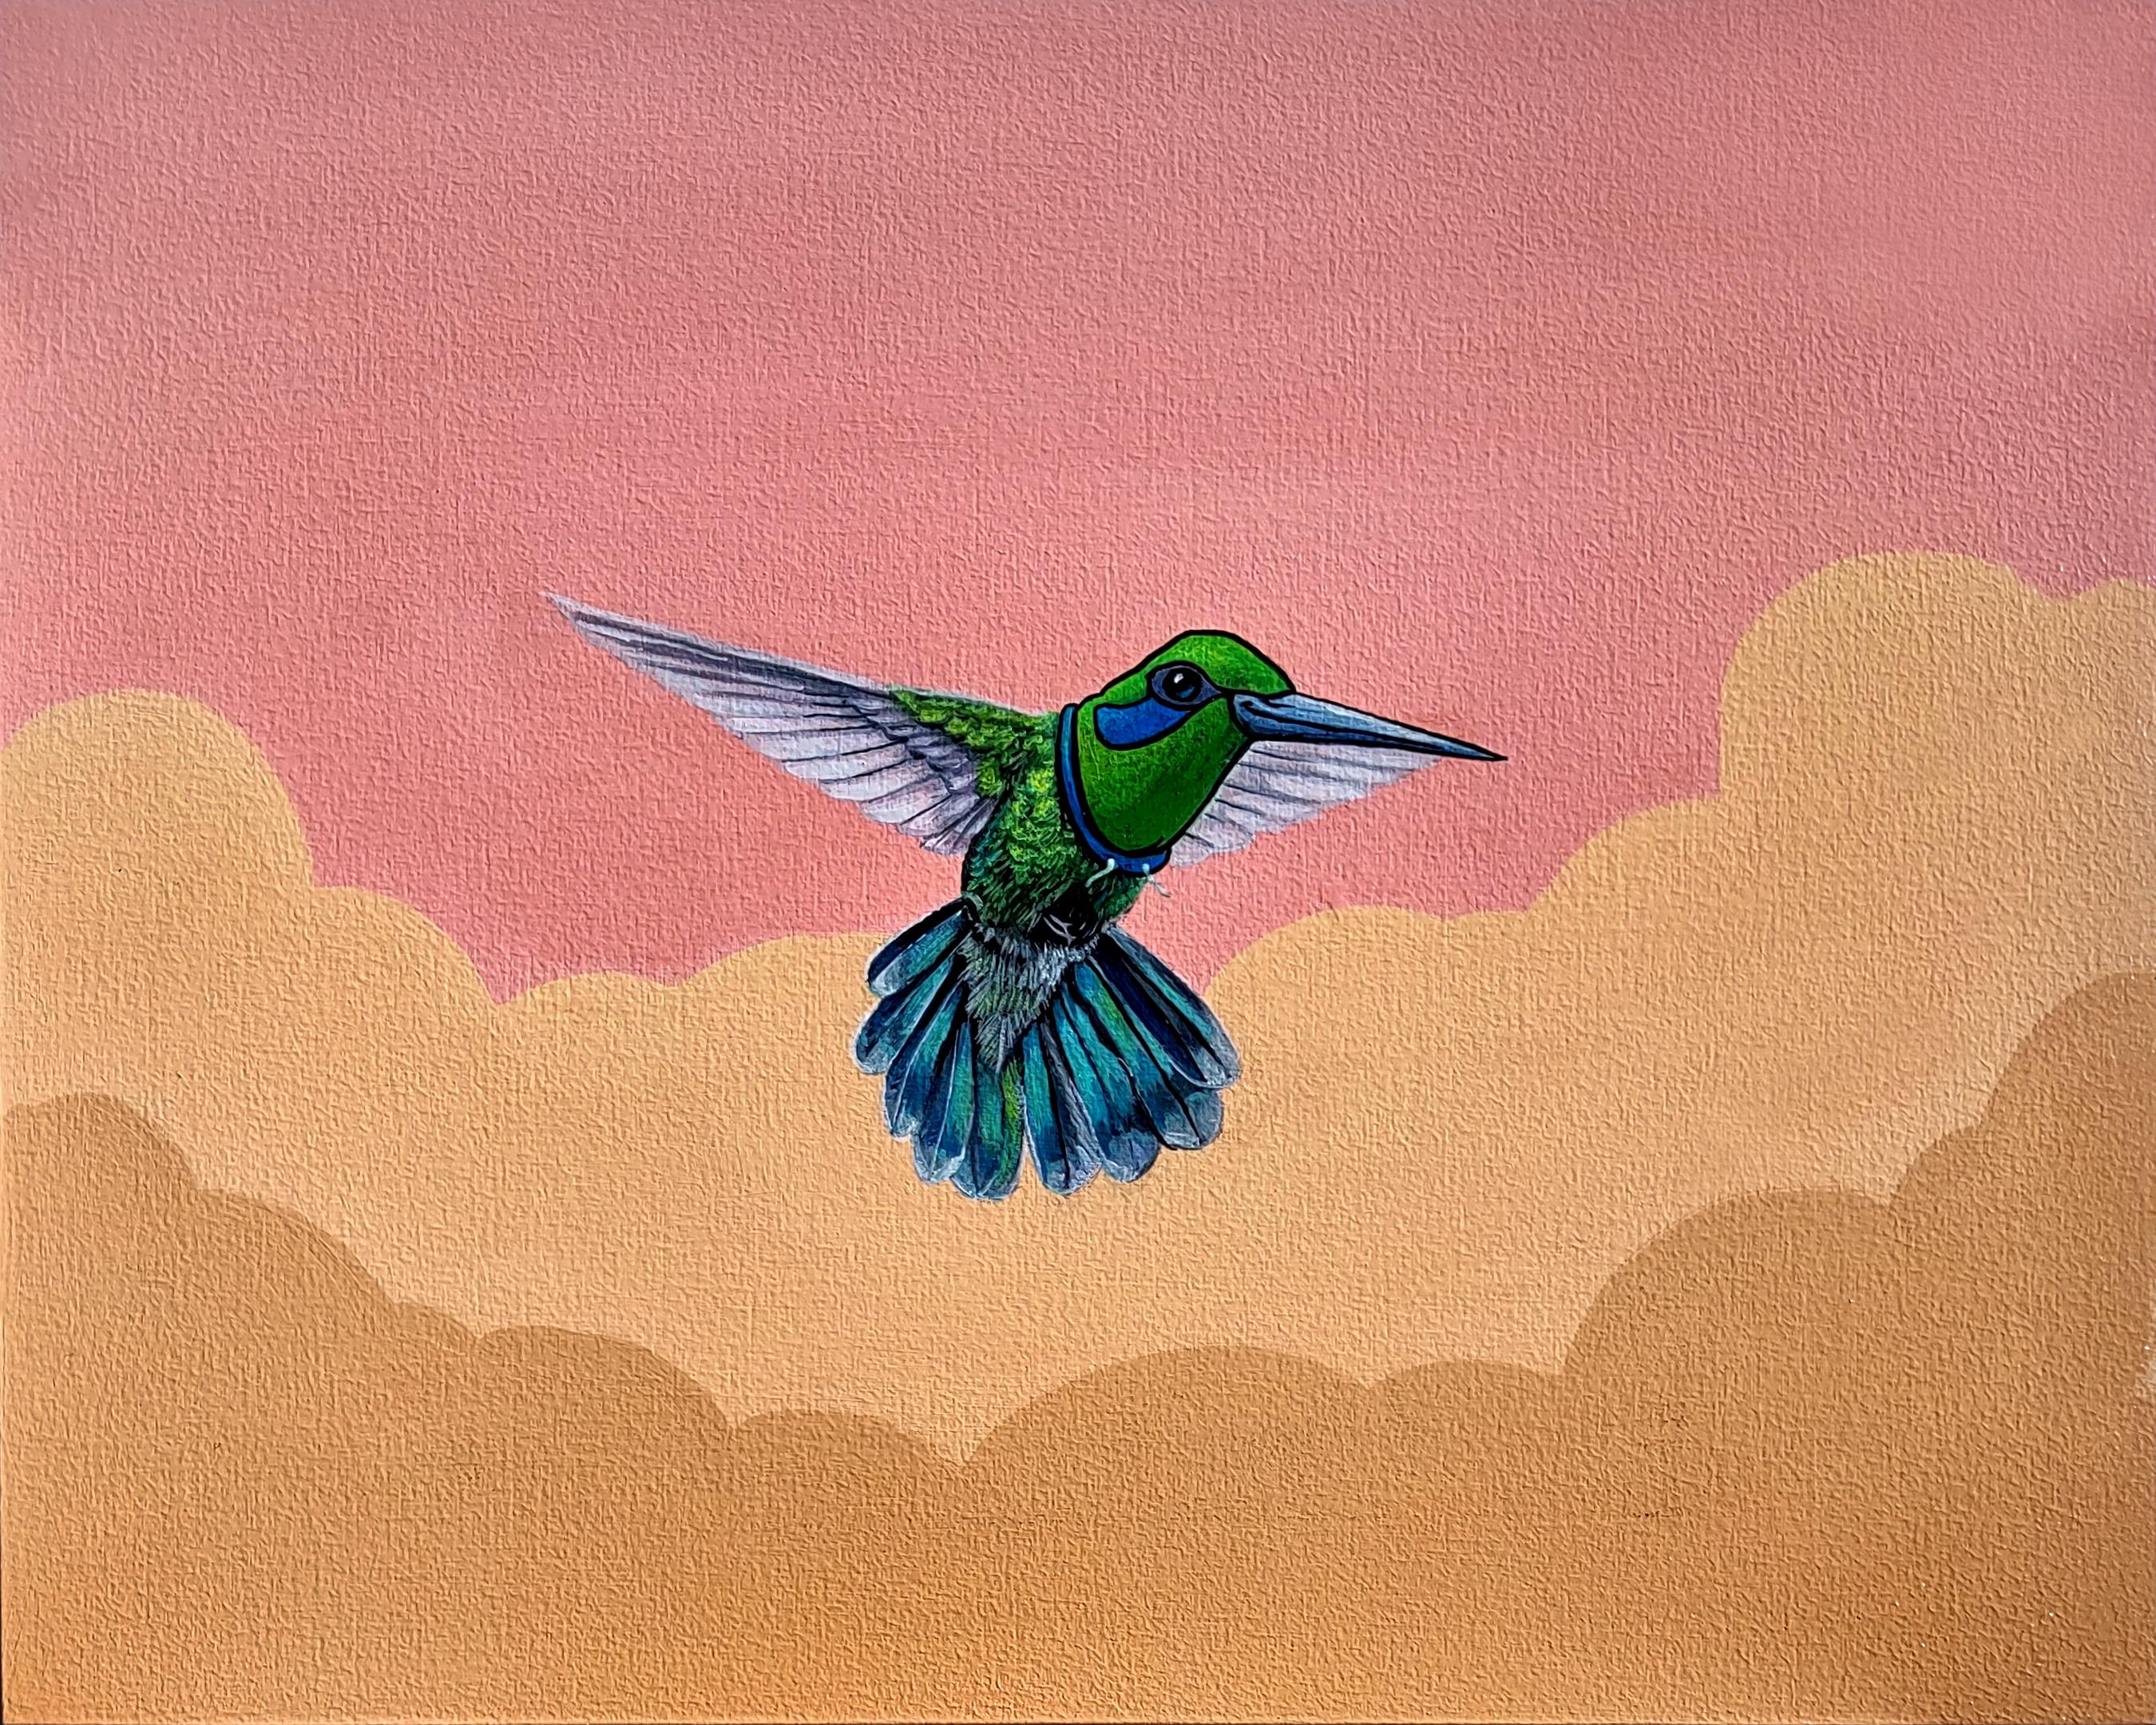 Animal Painting 3rd Version (Ben Patterson) - "Reaching New Heights", peinture à l'huile d'un oiseau en vol